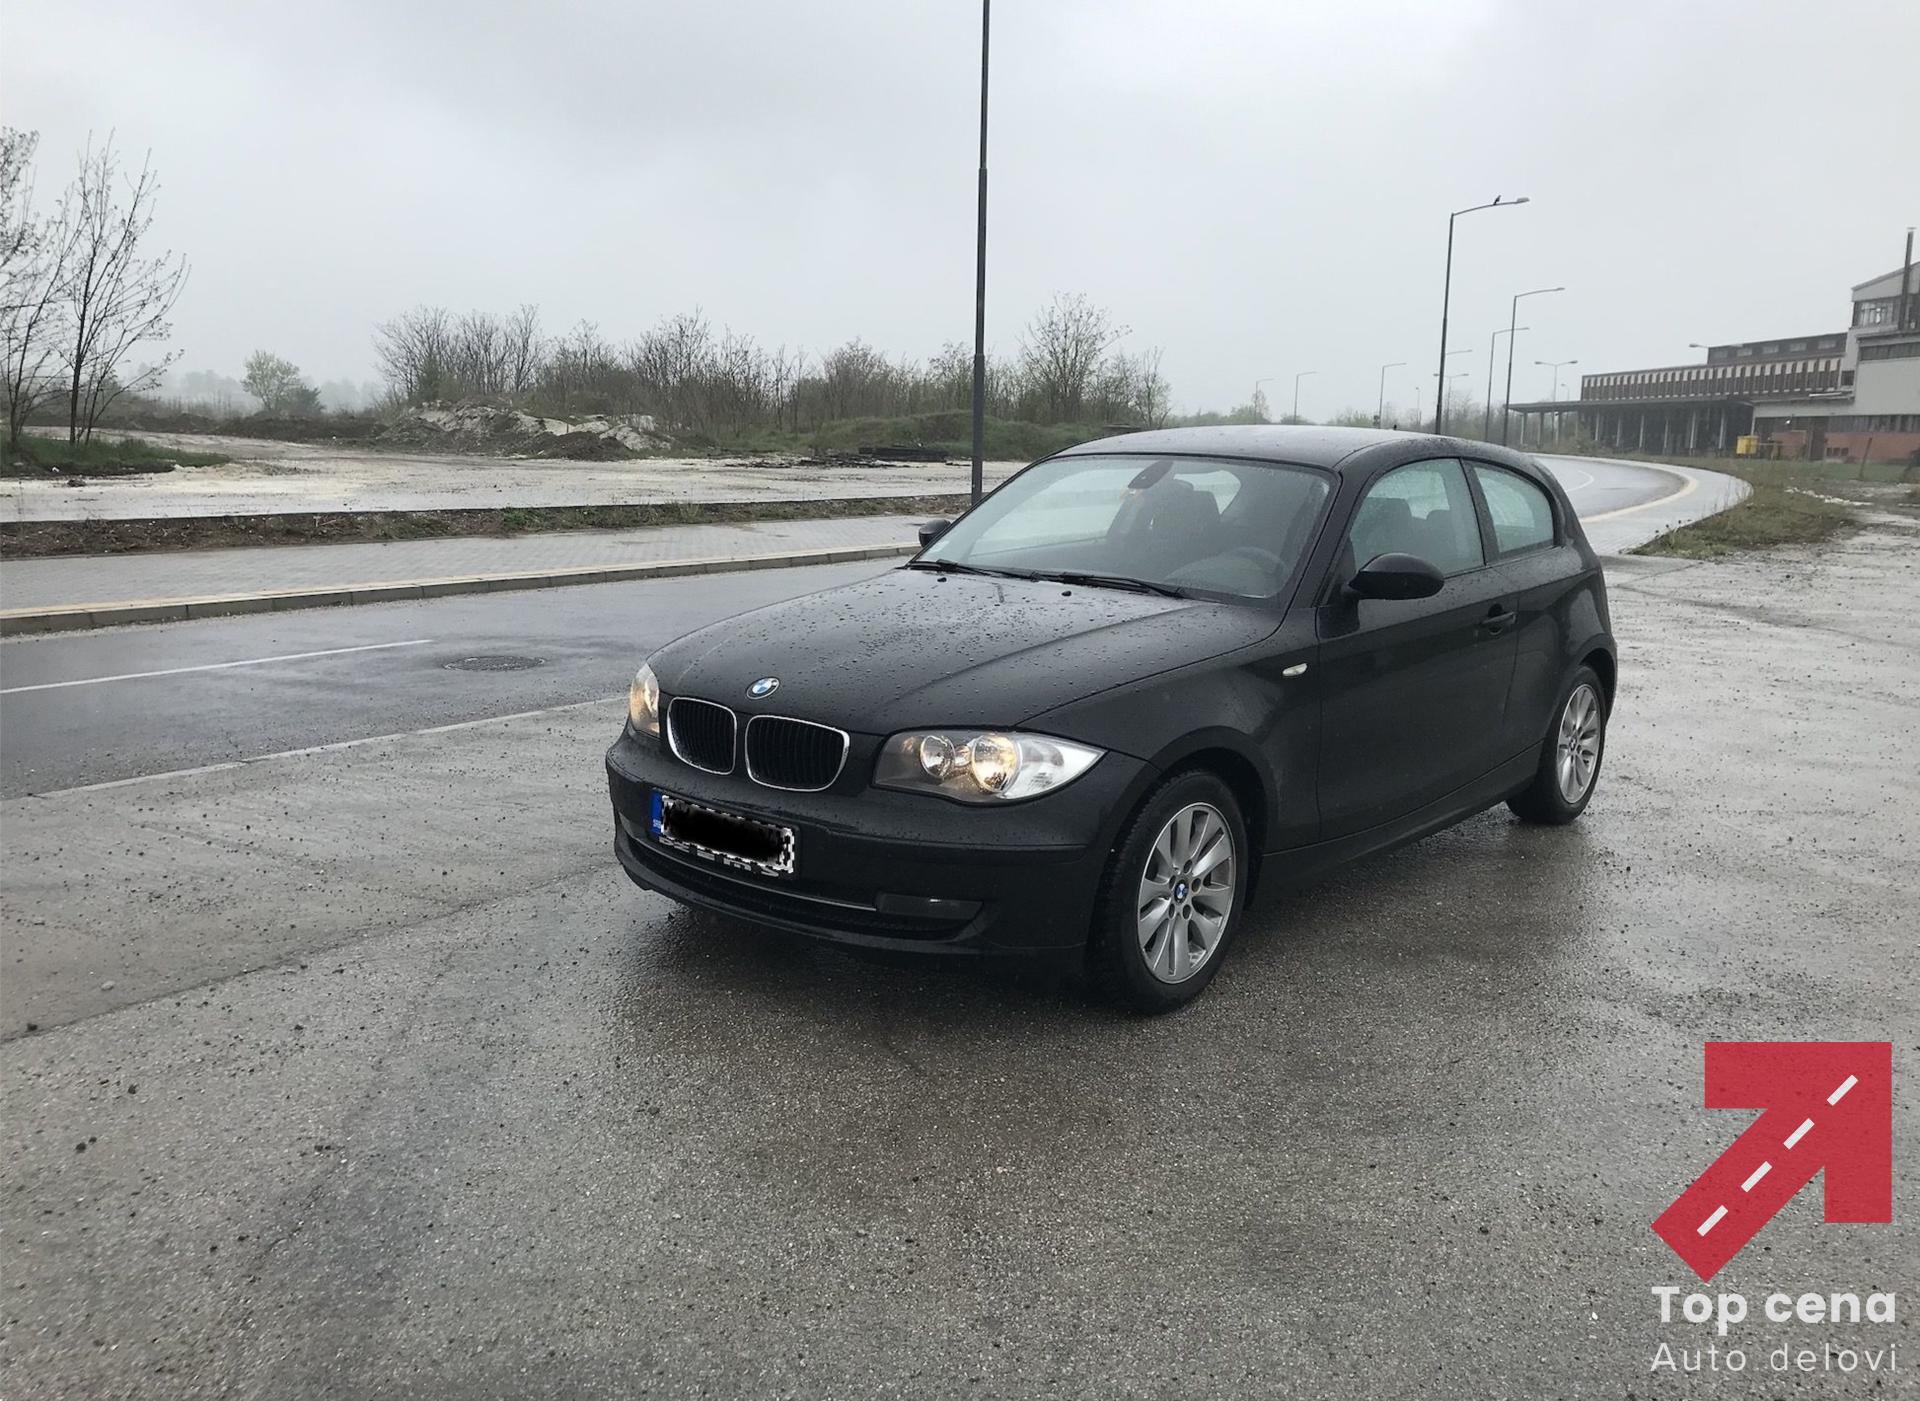 BMW Polovni Delovi Novi Sad E87,E90,E91,E60,E61